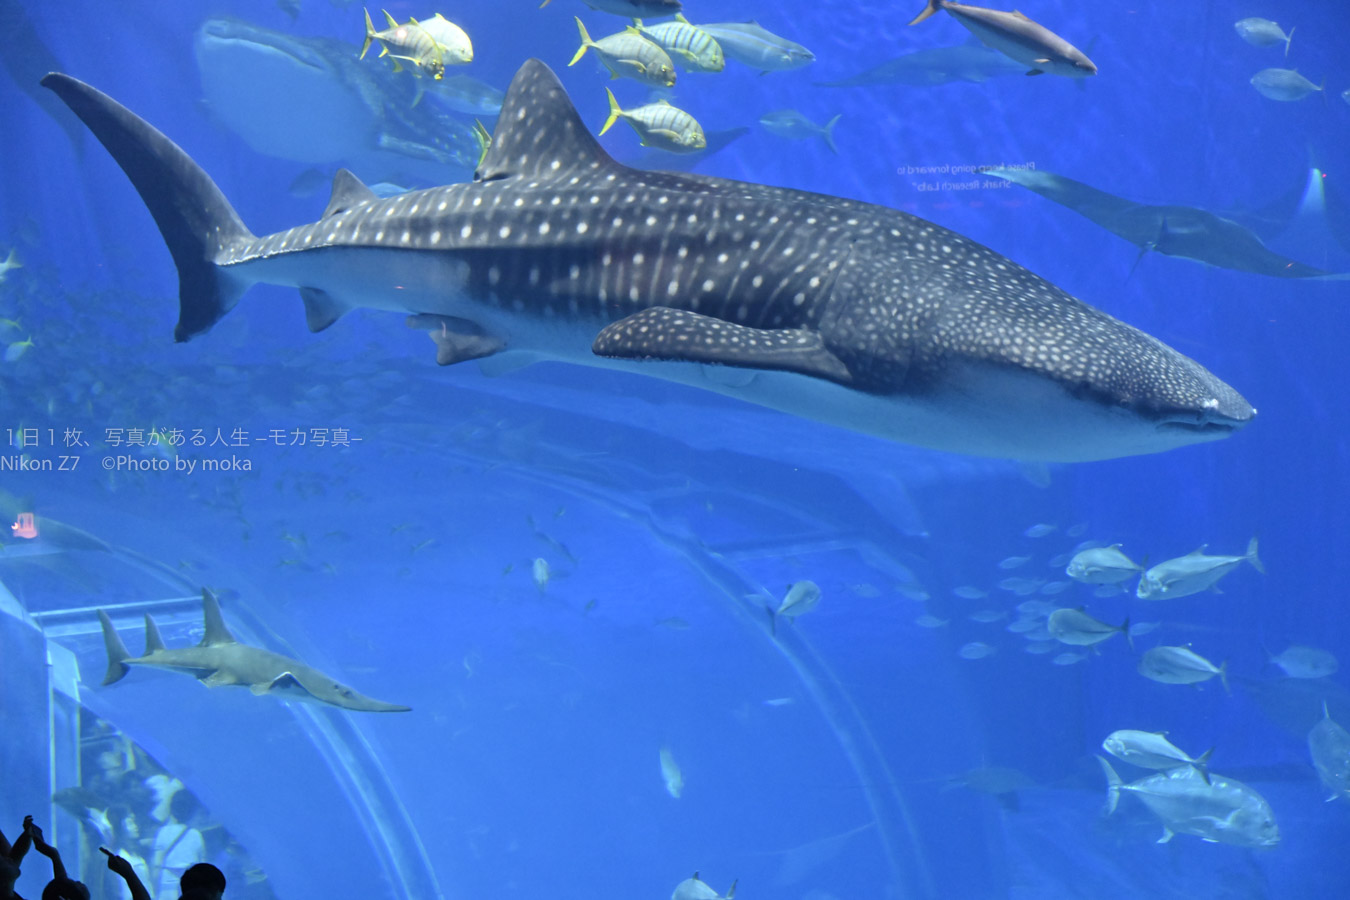 【水族館撮影】美ら海水族館のジンベイザメを撮ろう